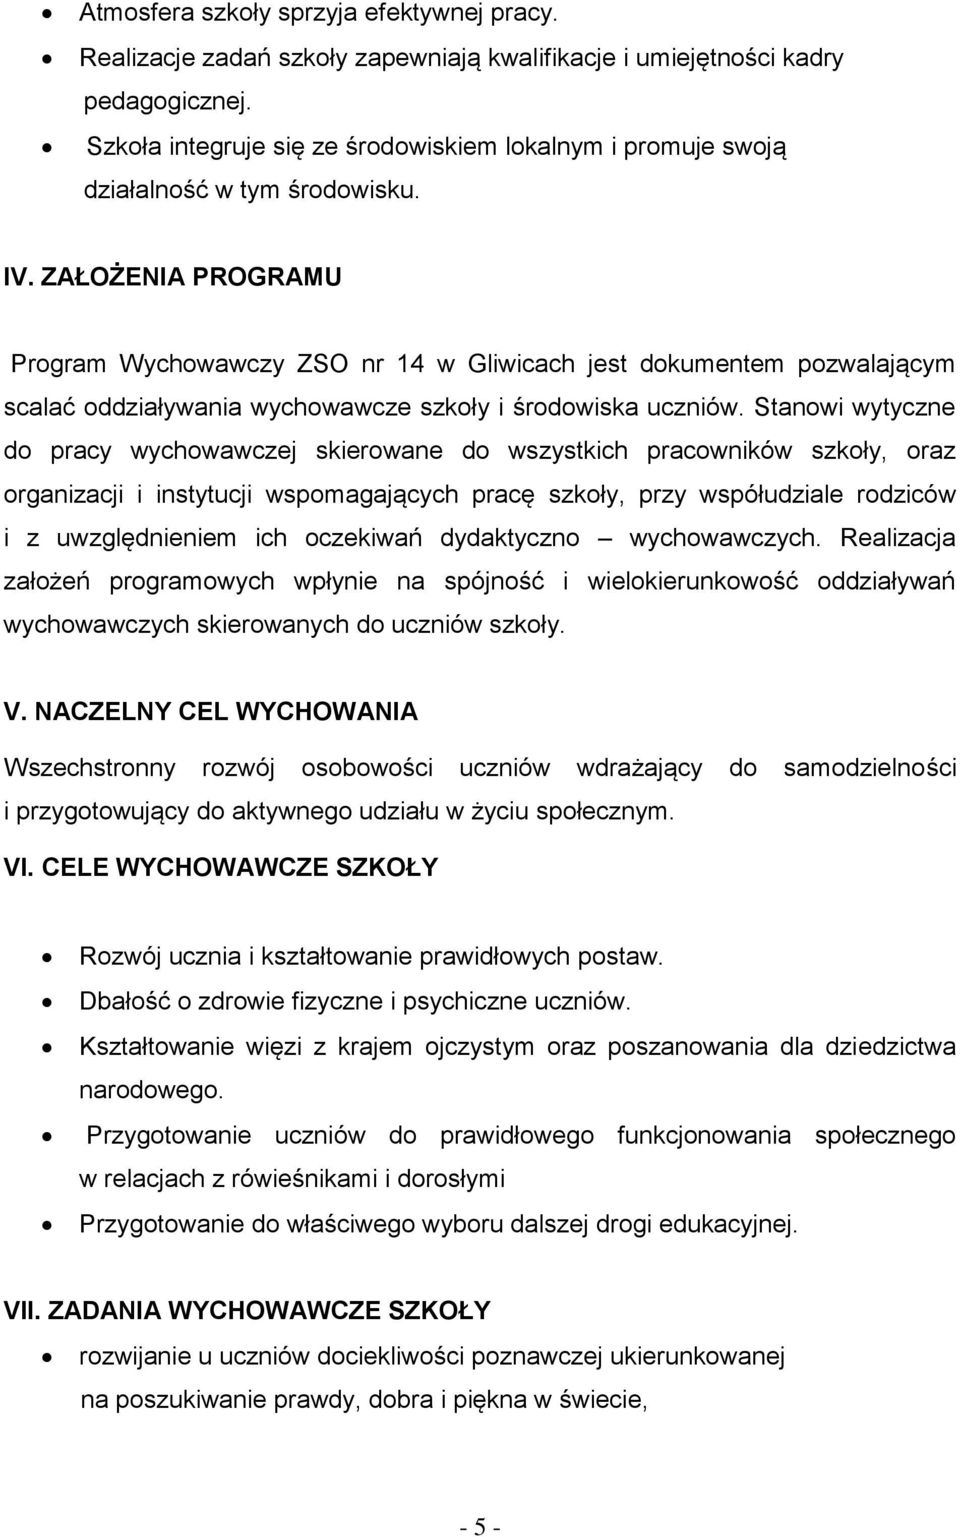 ZAŁOŻENIA PROGRAMU Program Wychowawczy ZSO nr 14 w Gliwicach jest dokumentem pozwalającym scalać oddziaływania wychowawcze szkoły i środowiska uczniów.